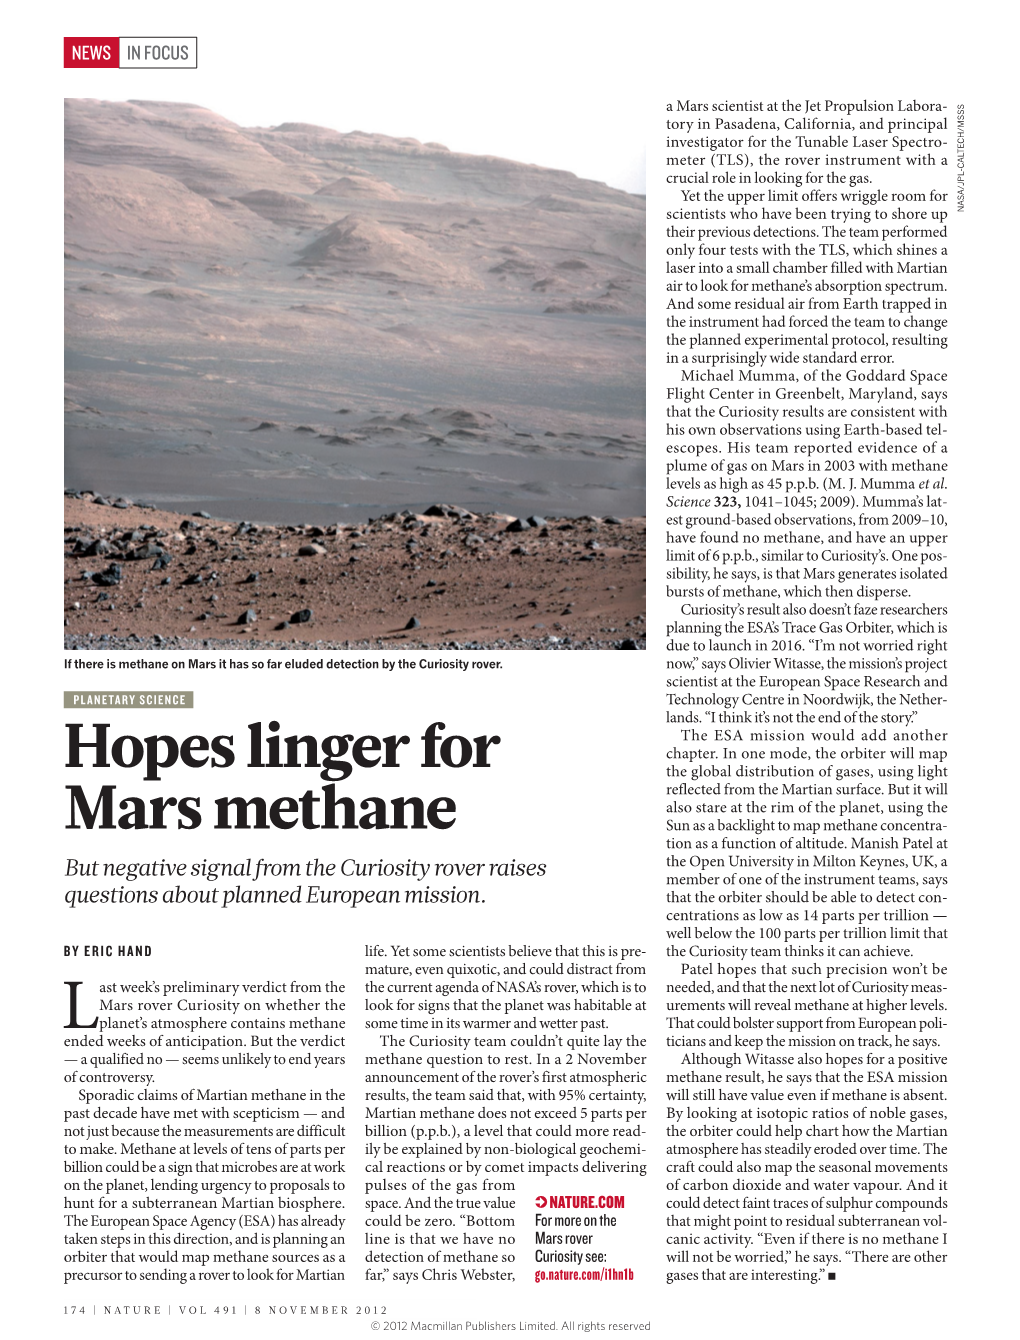 Hopes Linger for Mars Methane